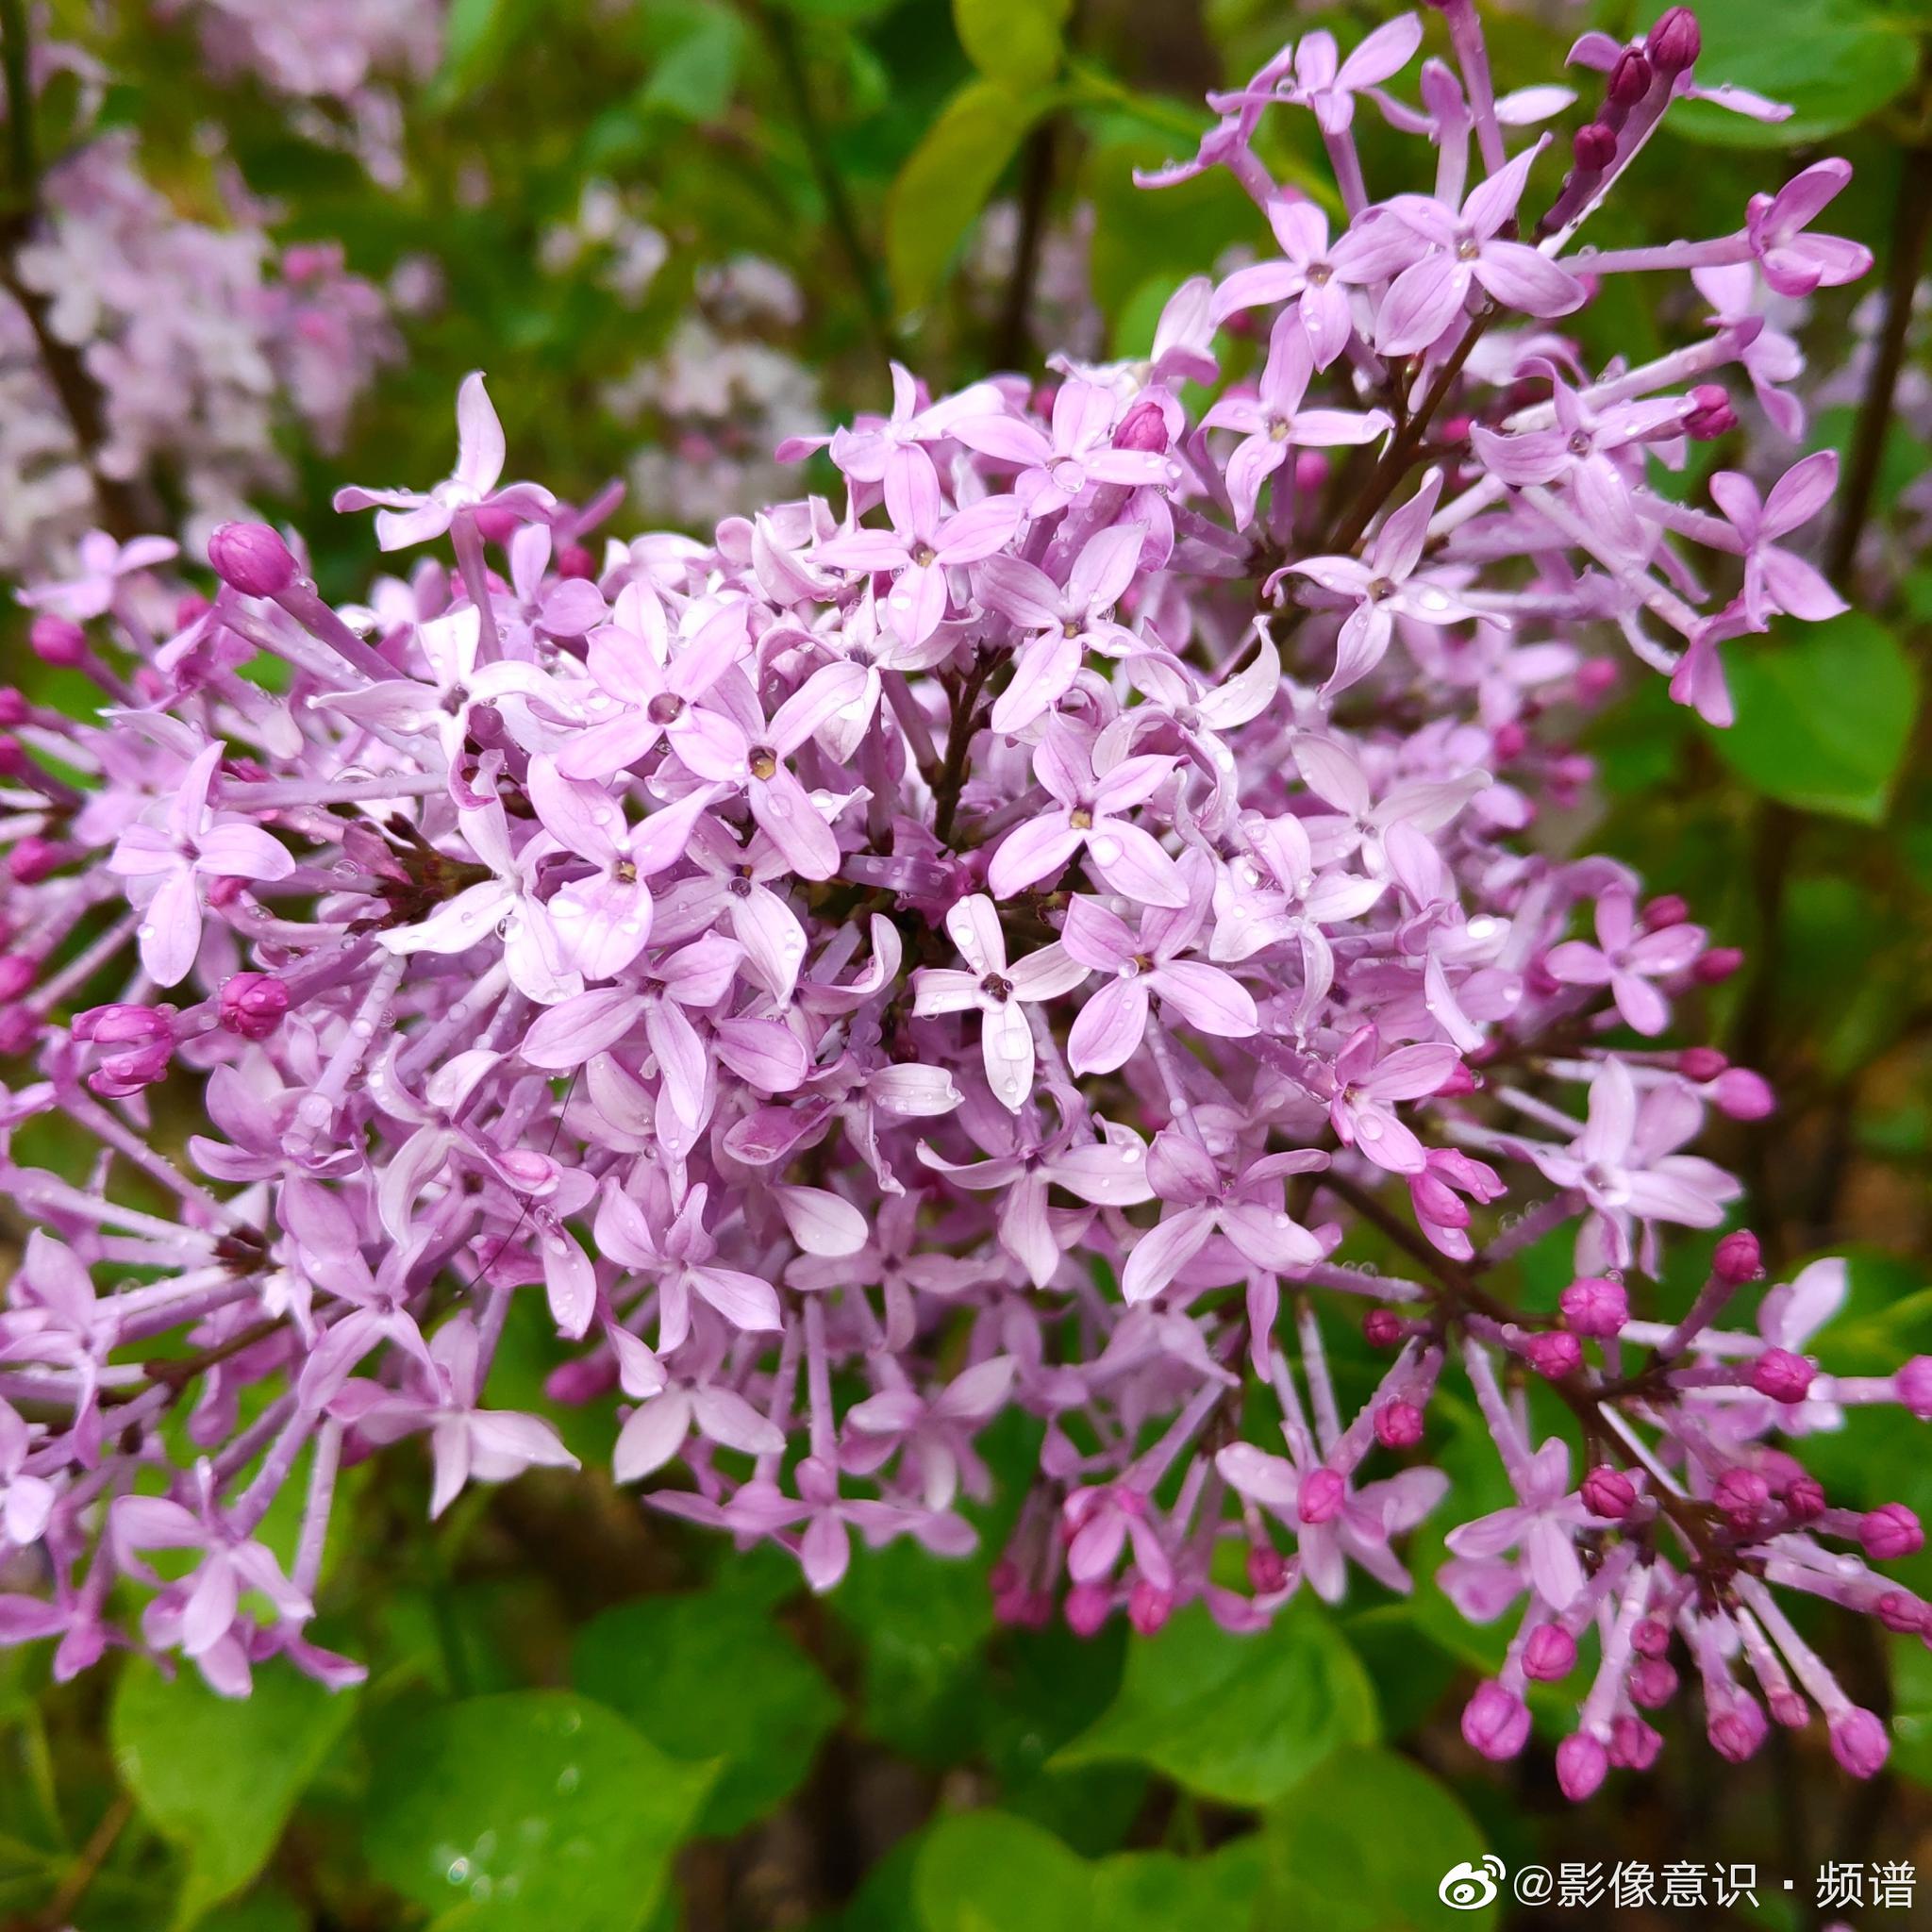 花朵 紫丁香 丁香 - Pixabay上的免费照片 - Pixabay